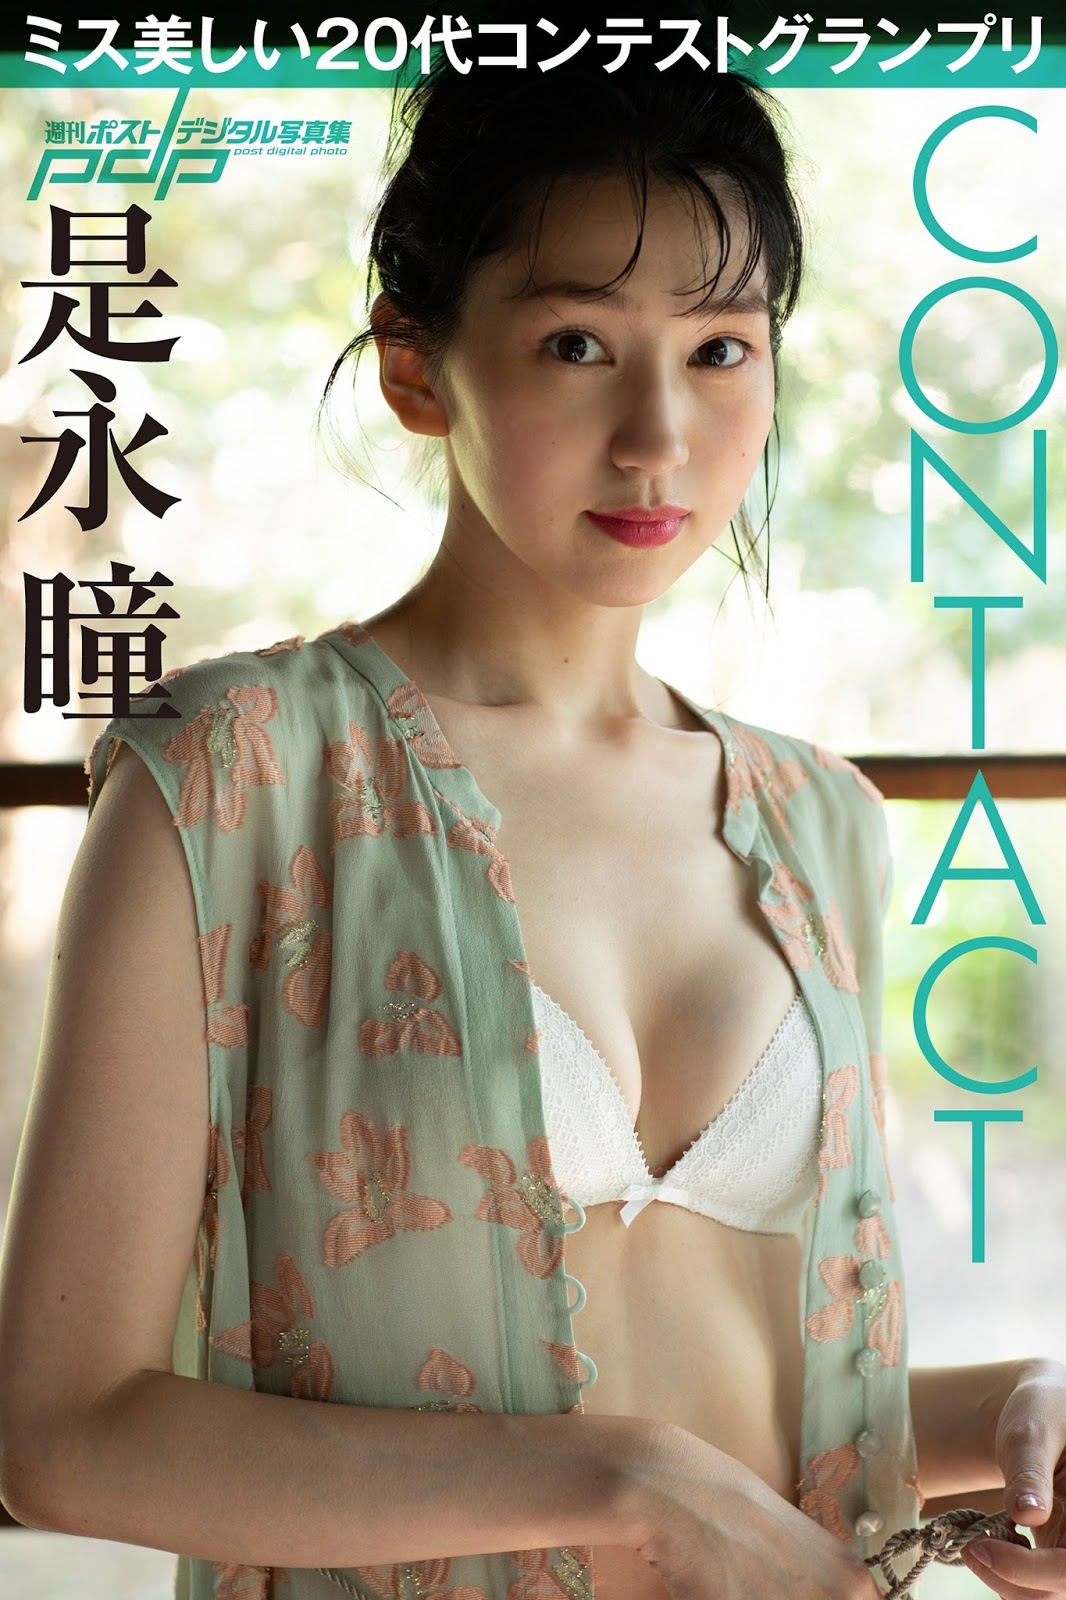 Hitomi Korenaga 是永瞳, Shukan Post 2020.09.18-25 (週刊ポスト 2020年9月18-25日号)